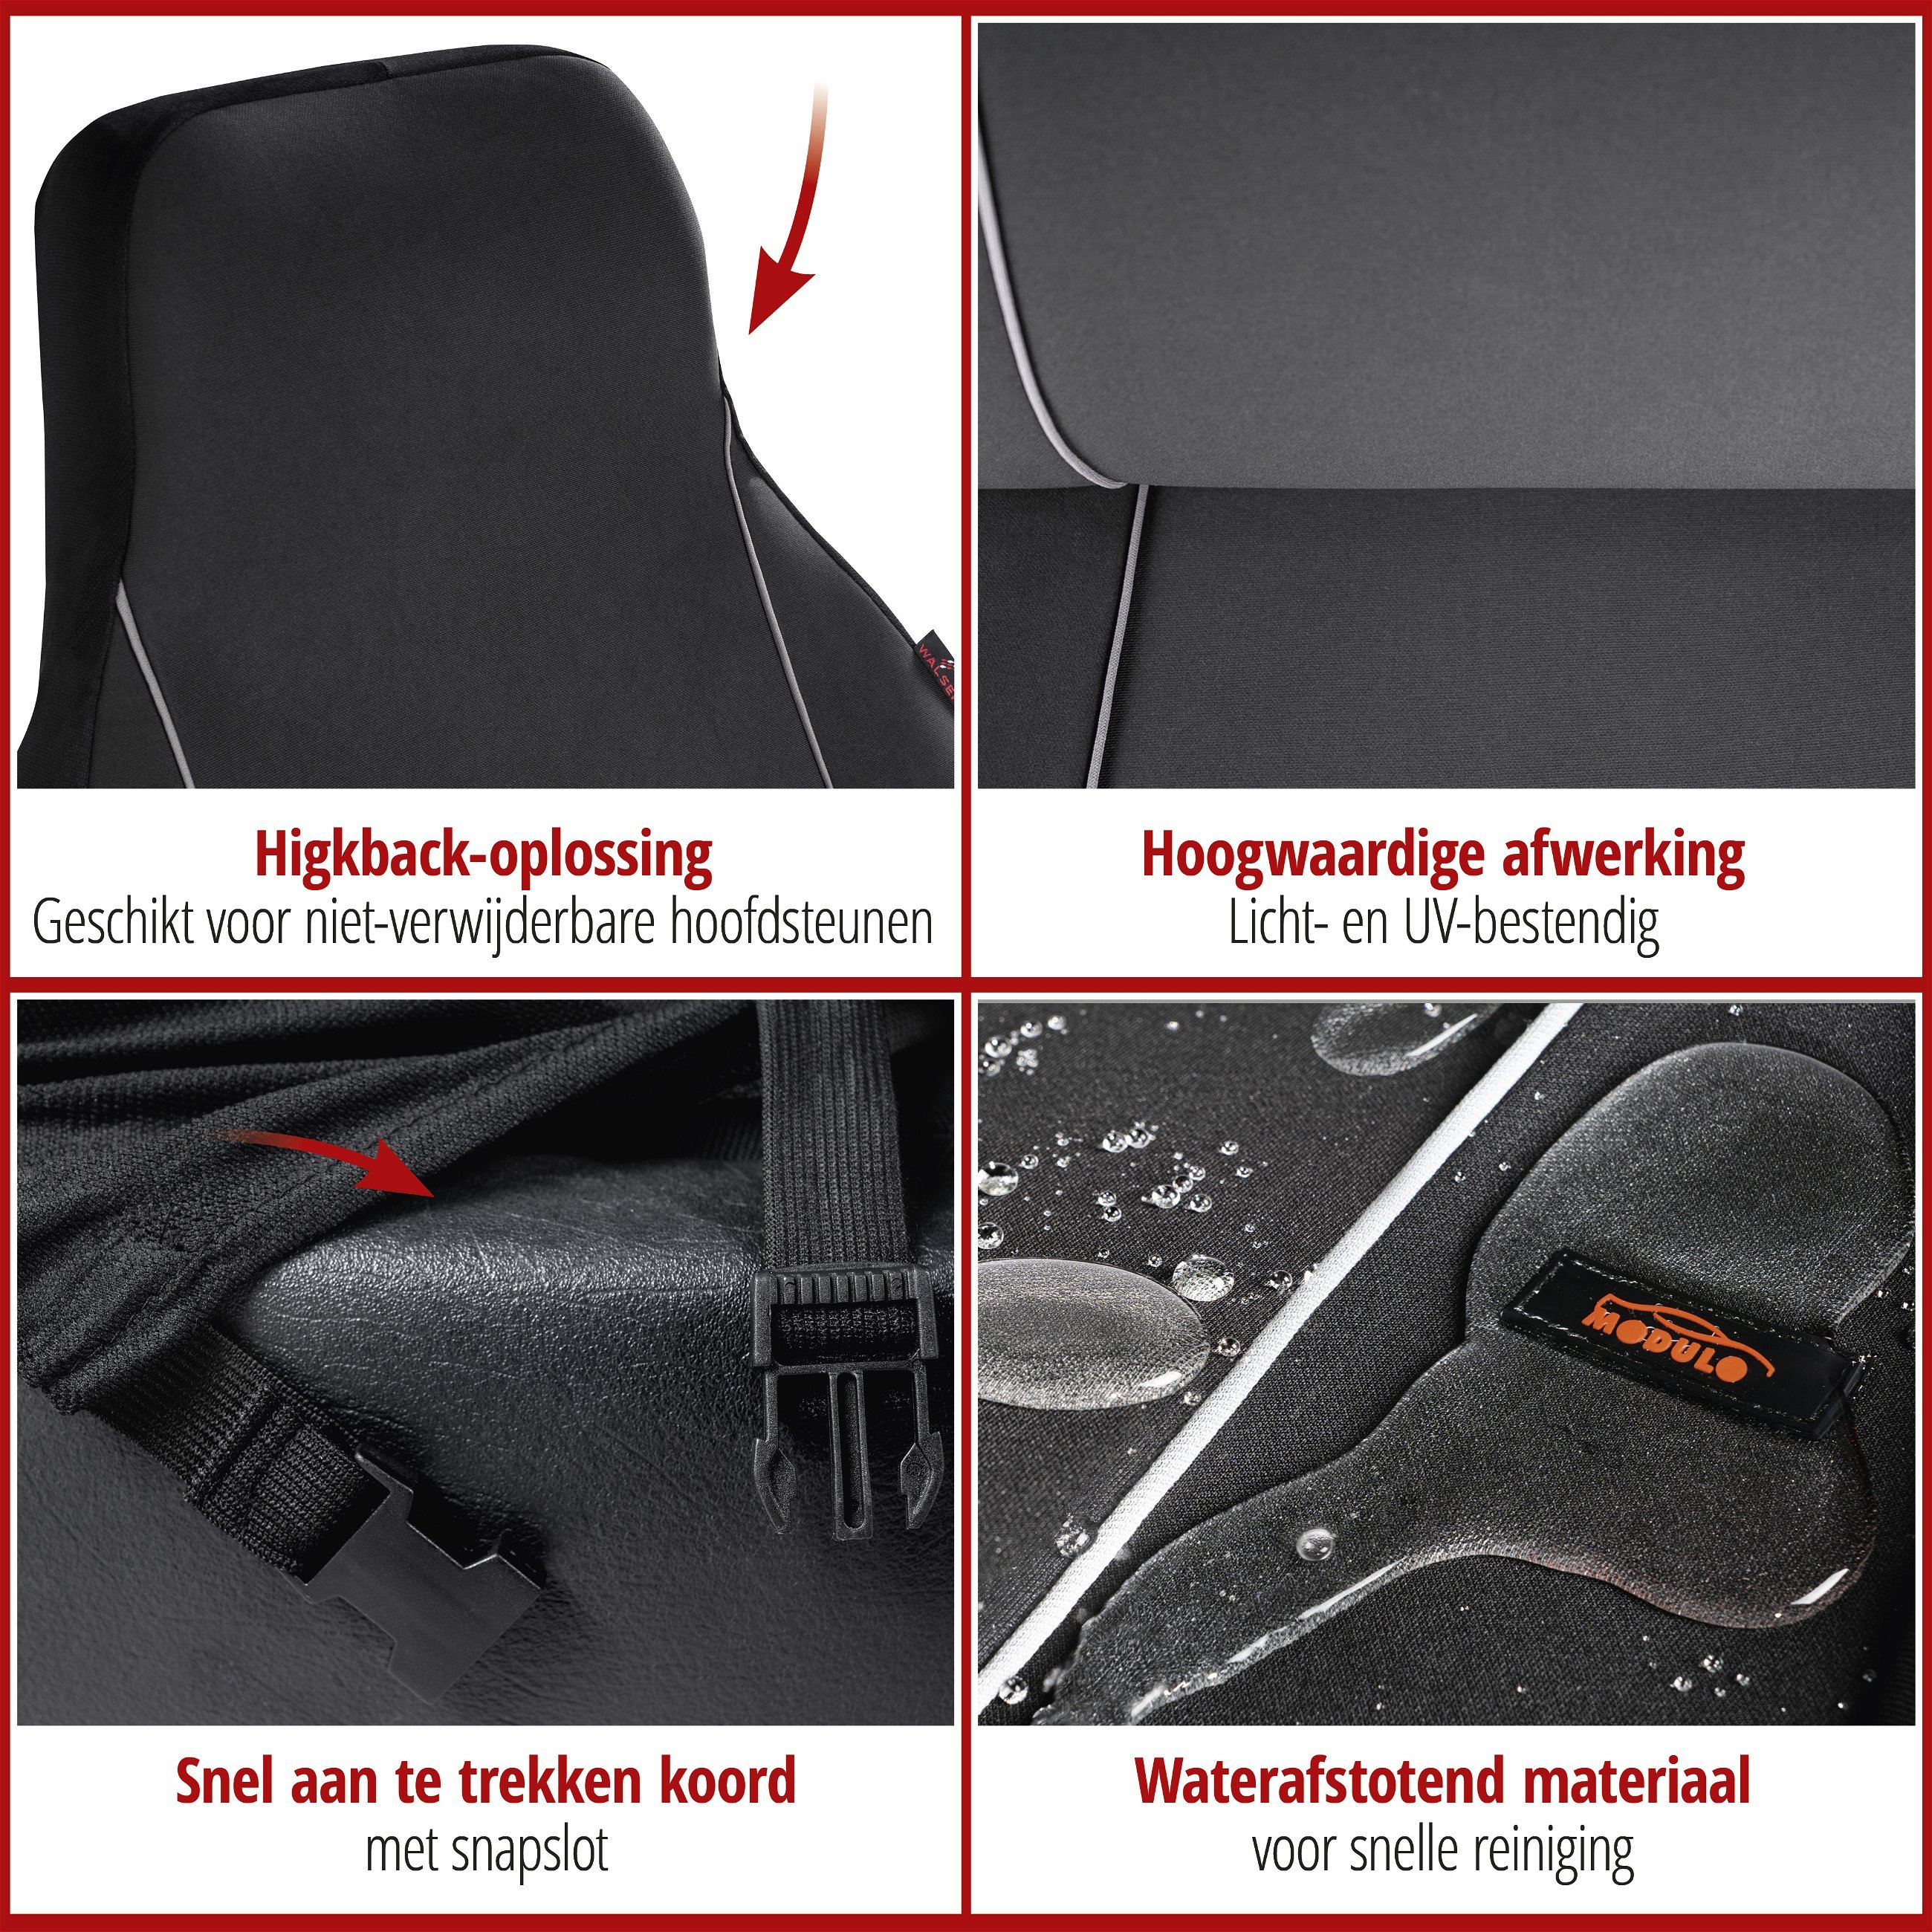 Autostoelhoezen Modulo Highback voor beide voorstoelen zwart universele bijpassende stoelhoezen set